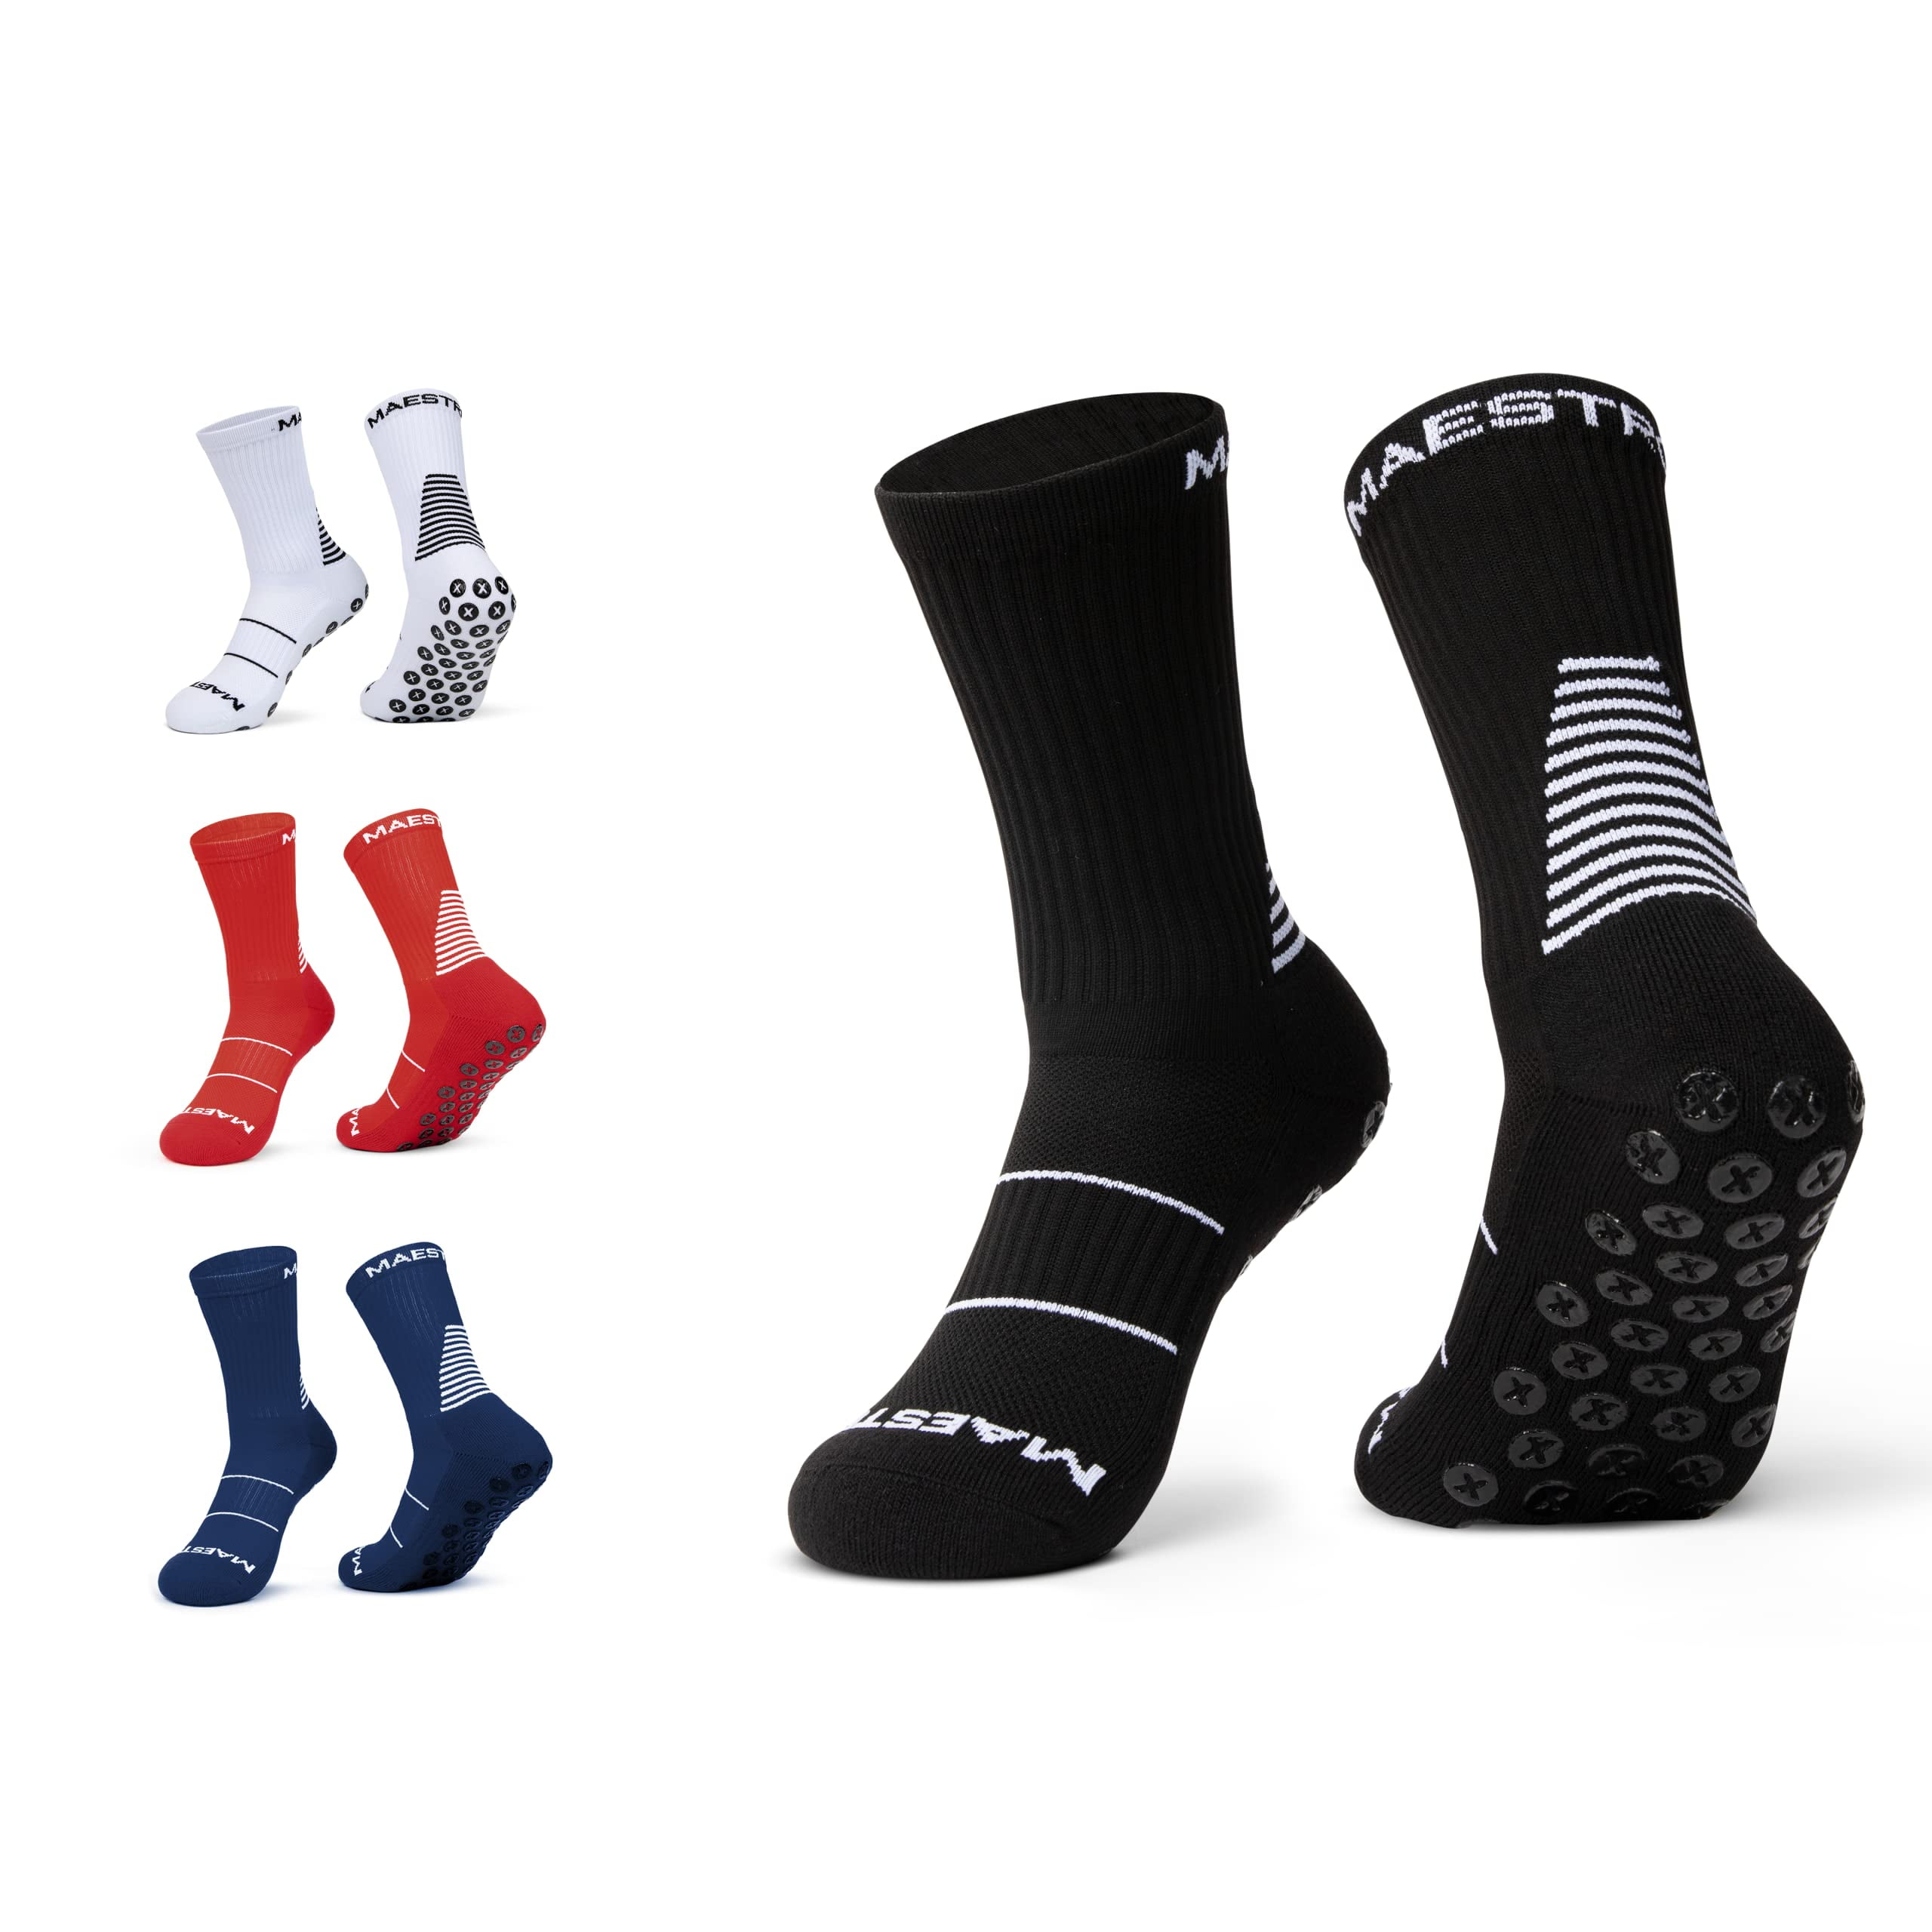 Maestro Grip Socks - Anti-Slip Socks for Men - Football, Basketball ...